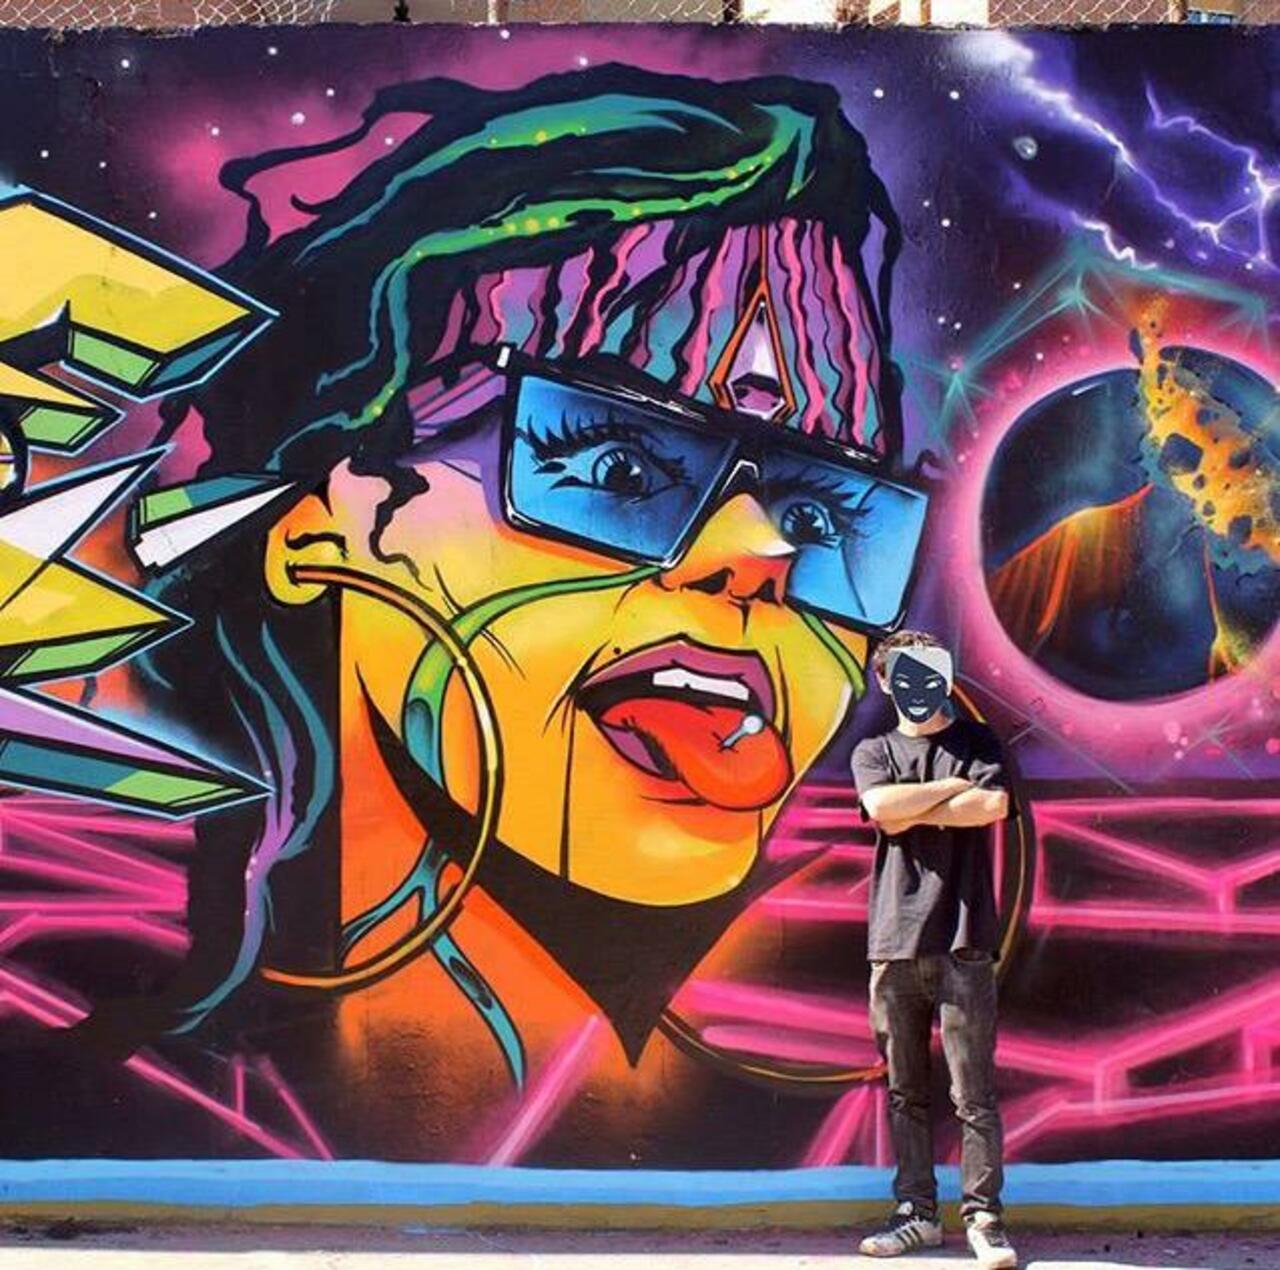 RT @Rabeliouus: RT @GoogleStreetArt: Brilliant new Street Art by the artist Jaycaes

#art #graffiti #mural #streetart http://t.co/VwCWnmSskJ